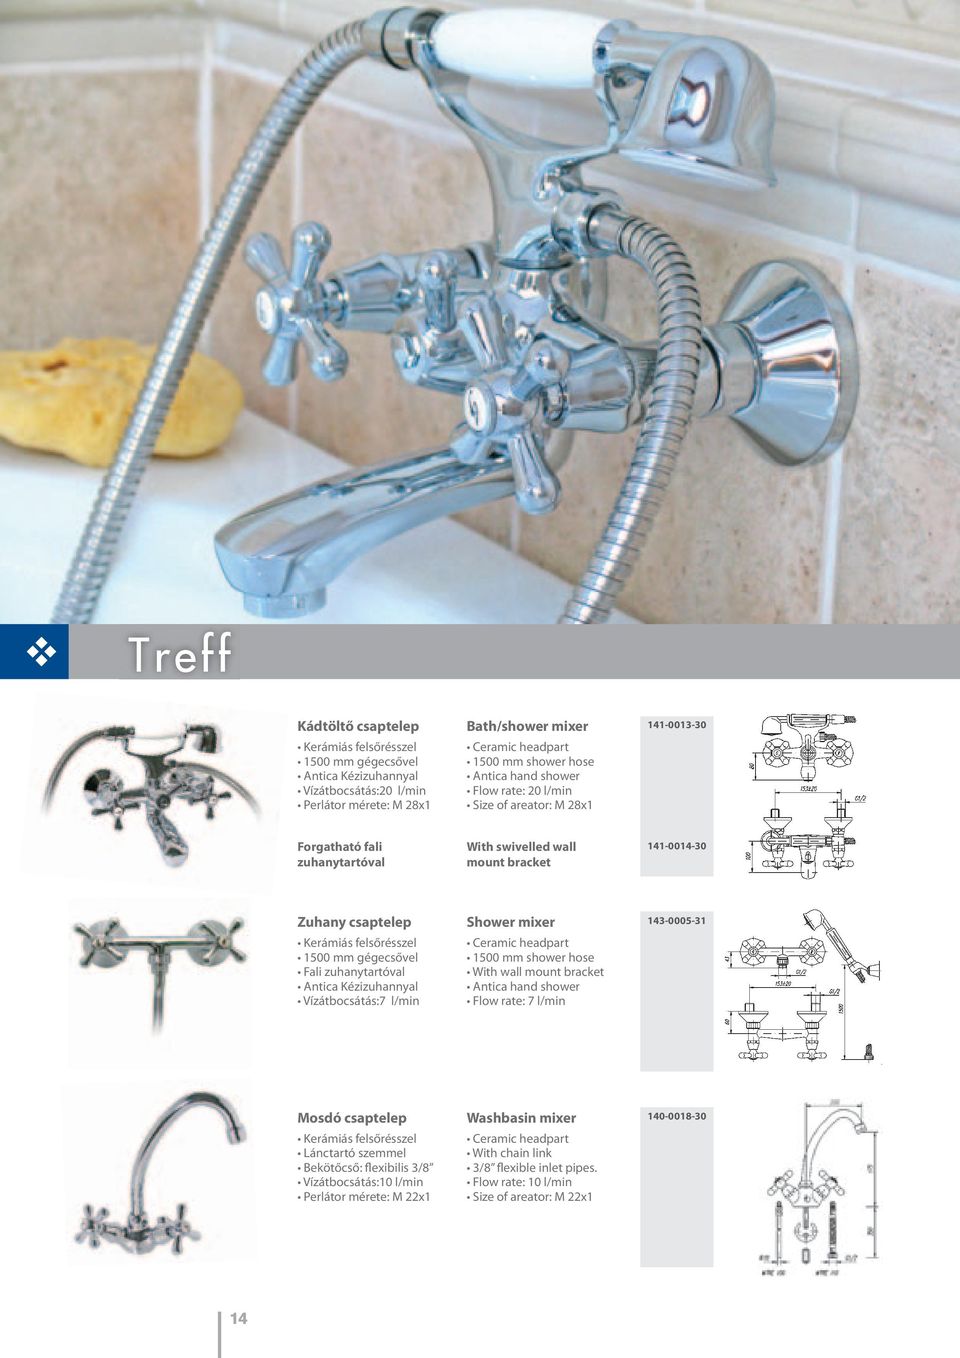 gégecsővel Fali zuhanytartóval Antica Kézizuhannyal Vízátbocsátás:7 l/min Shower mixer Ceramic headpart 1500 mm shower hose With wall mount bracket Antica hand shower Flow rate: 7 l/min 143-0005-31